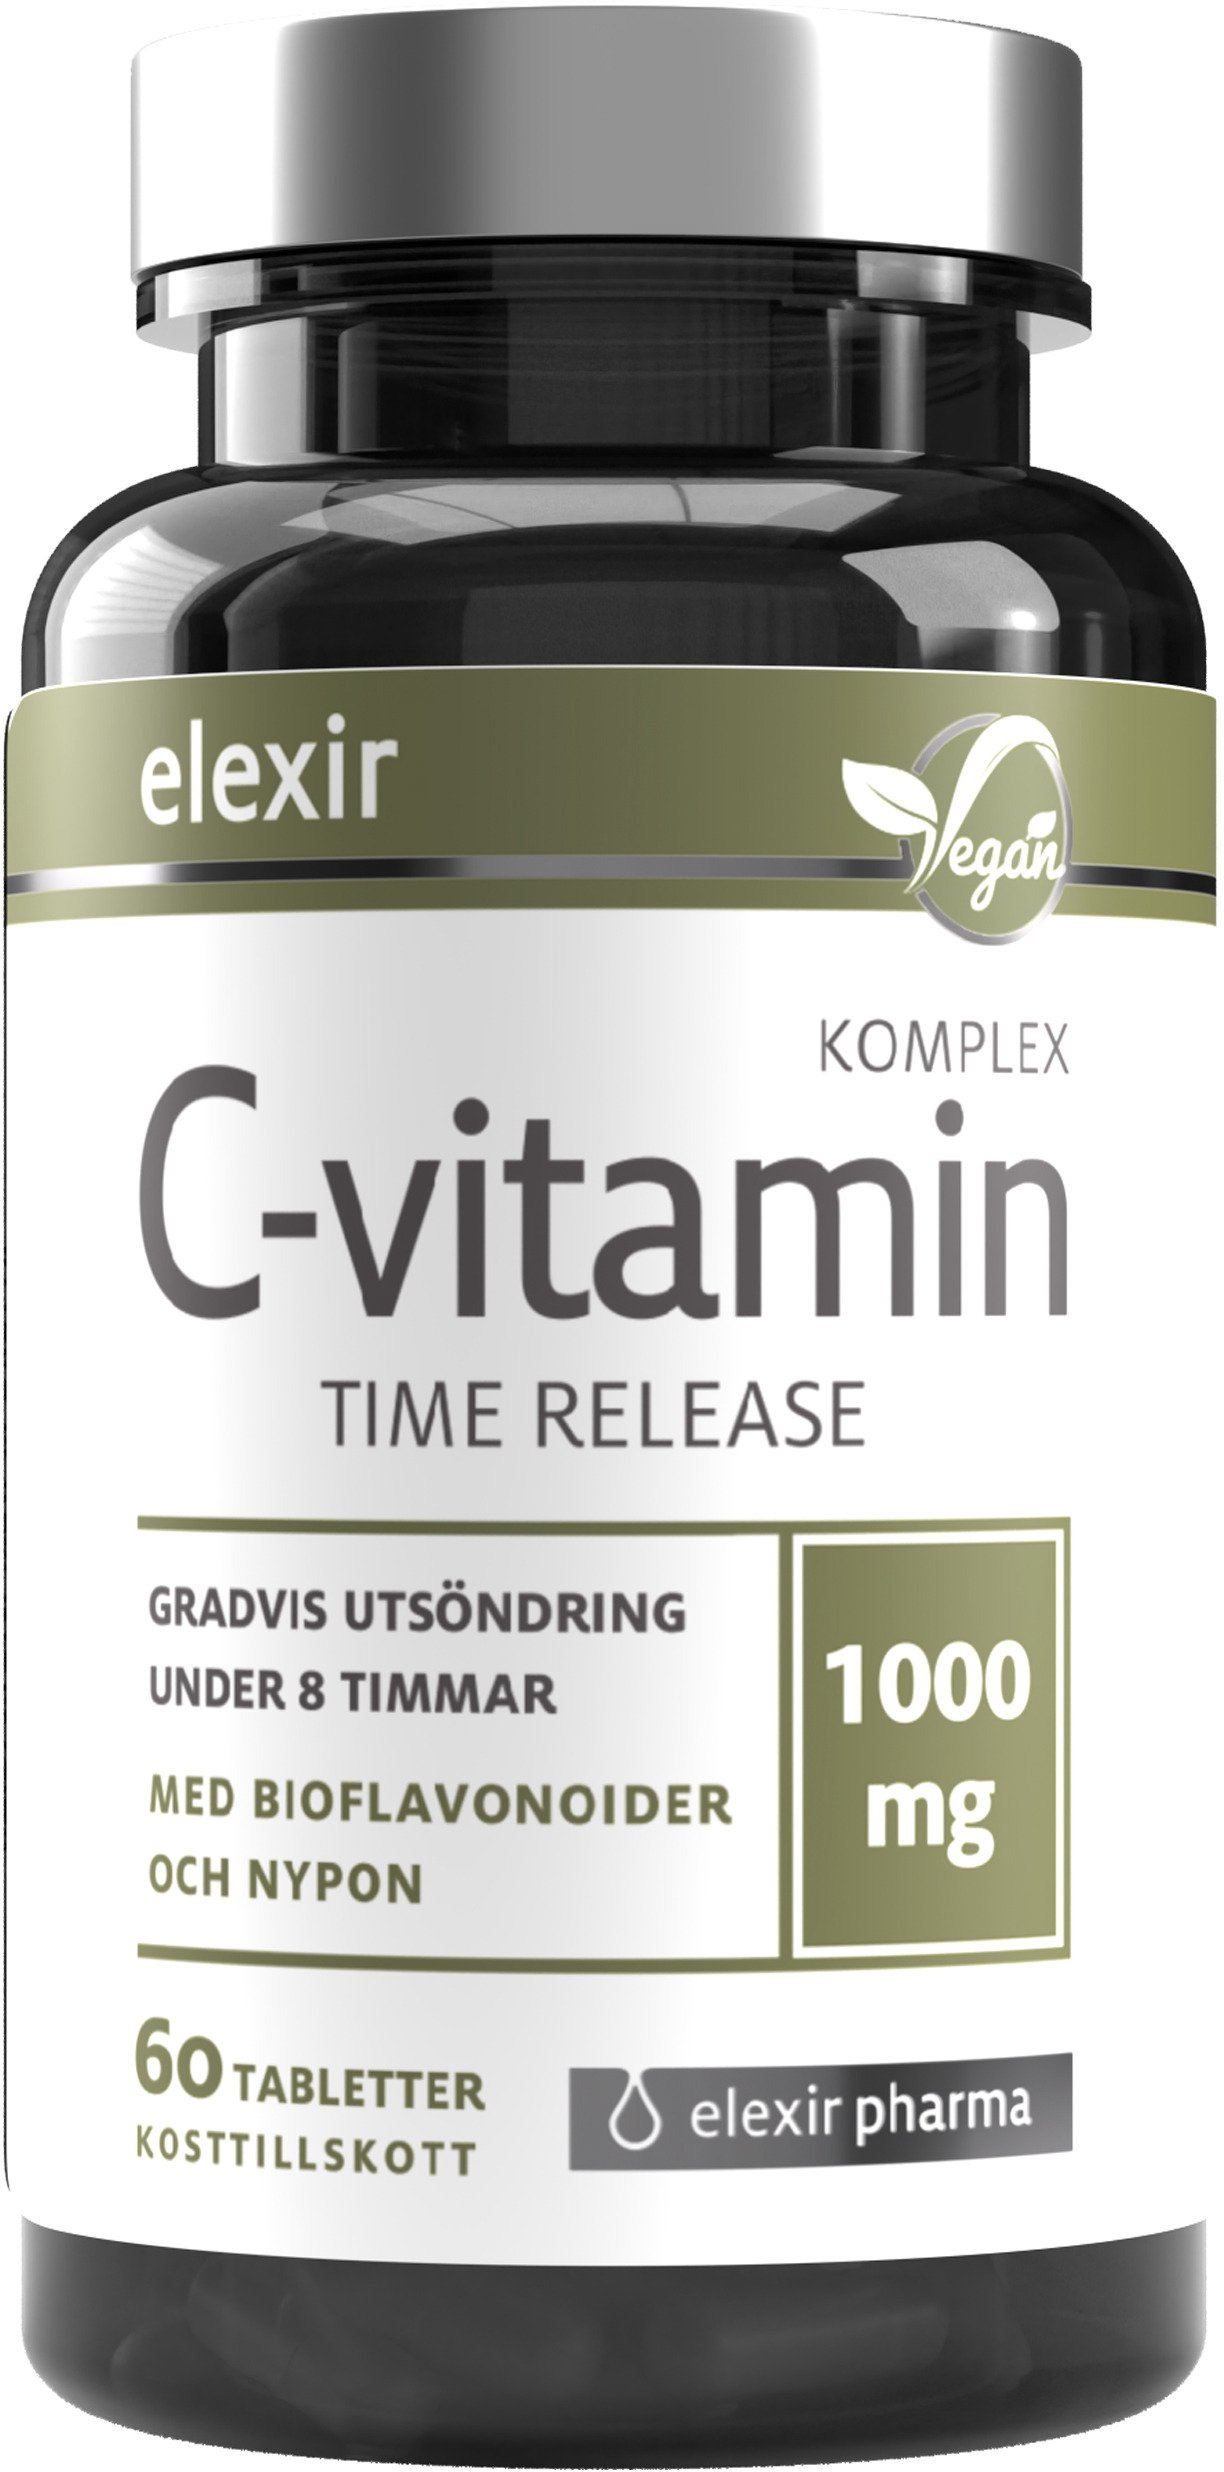 Elexir Pharma C-vitamin 1000 mg Time Release 60 tabletter